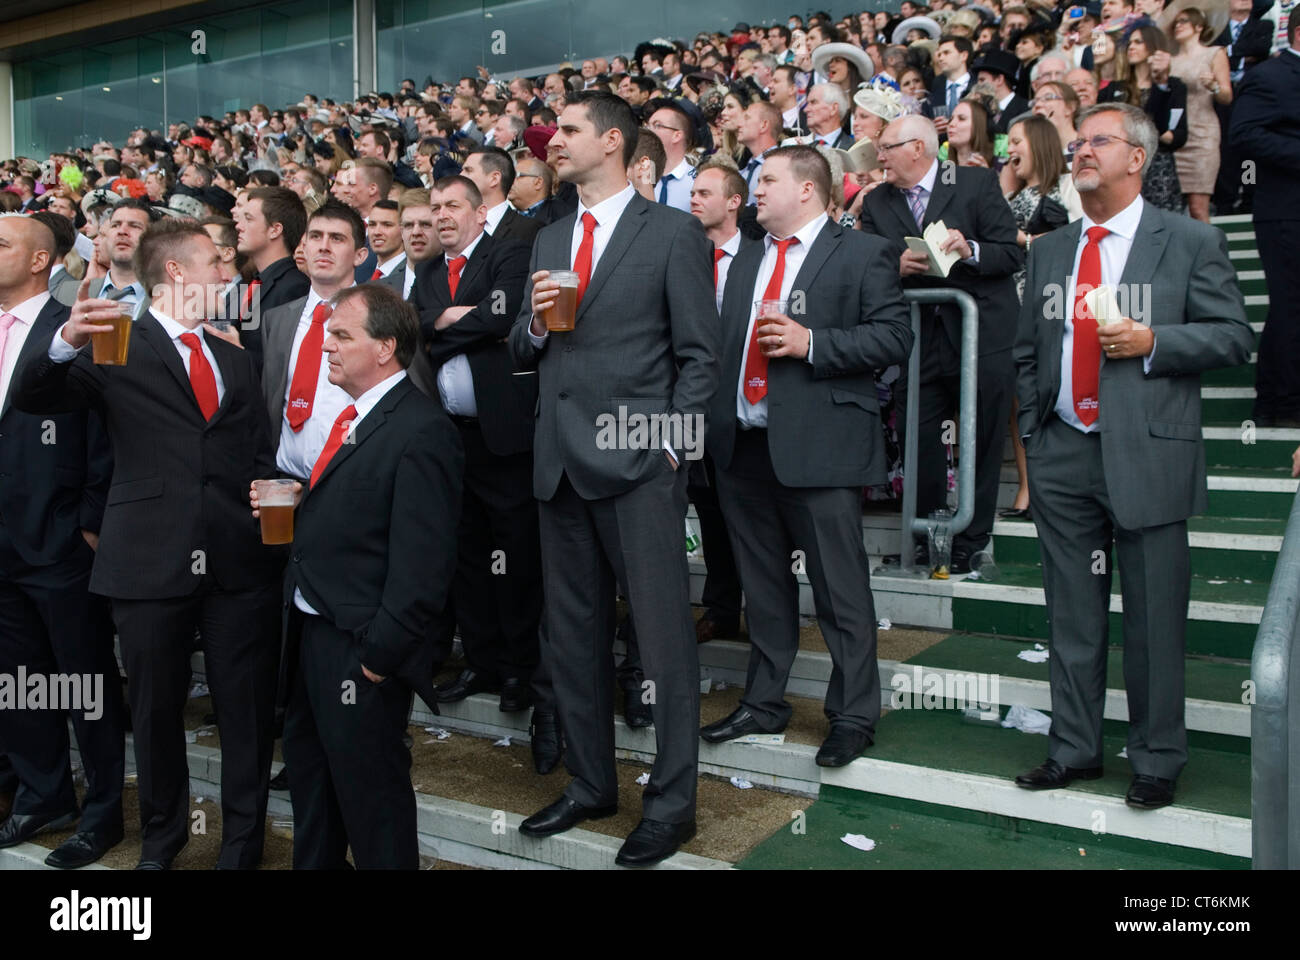 Gruppo di uomini per la festa di addio al celibato, tutti con cravatte rosse. Corse di cavalli Royal Ascot Berkshire. 2012 2010 HOMER SYKES Foto Stock